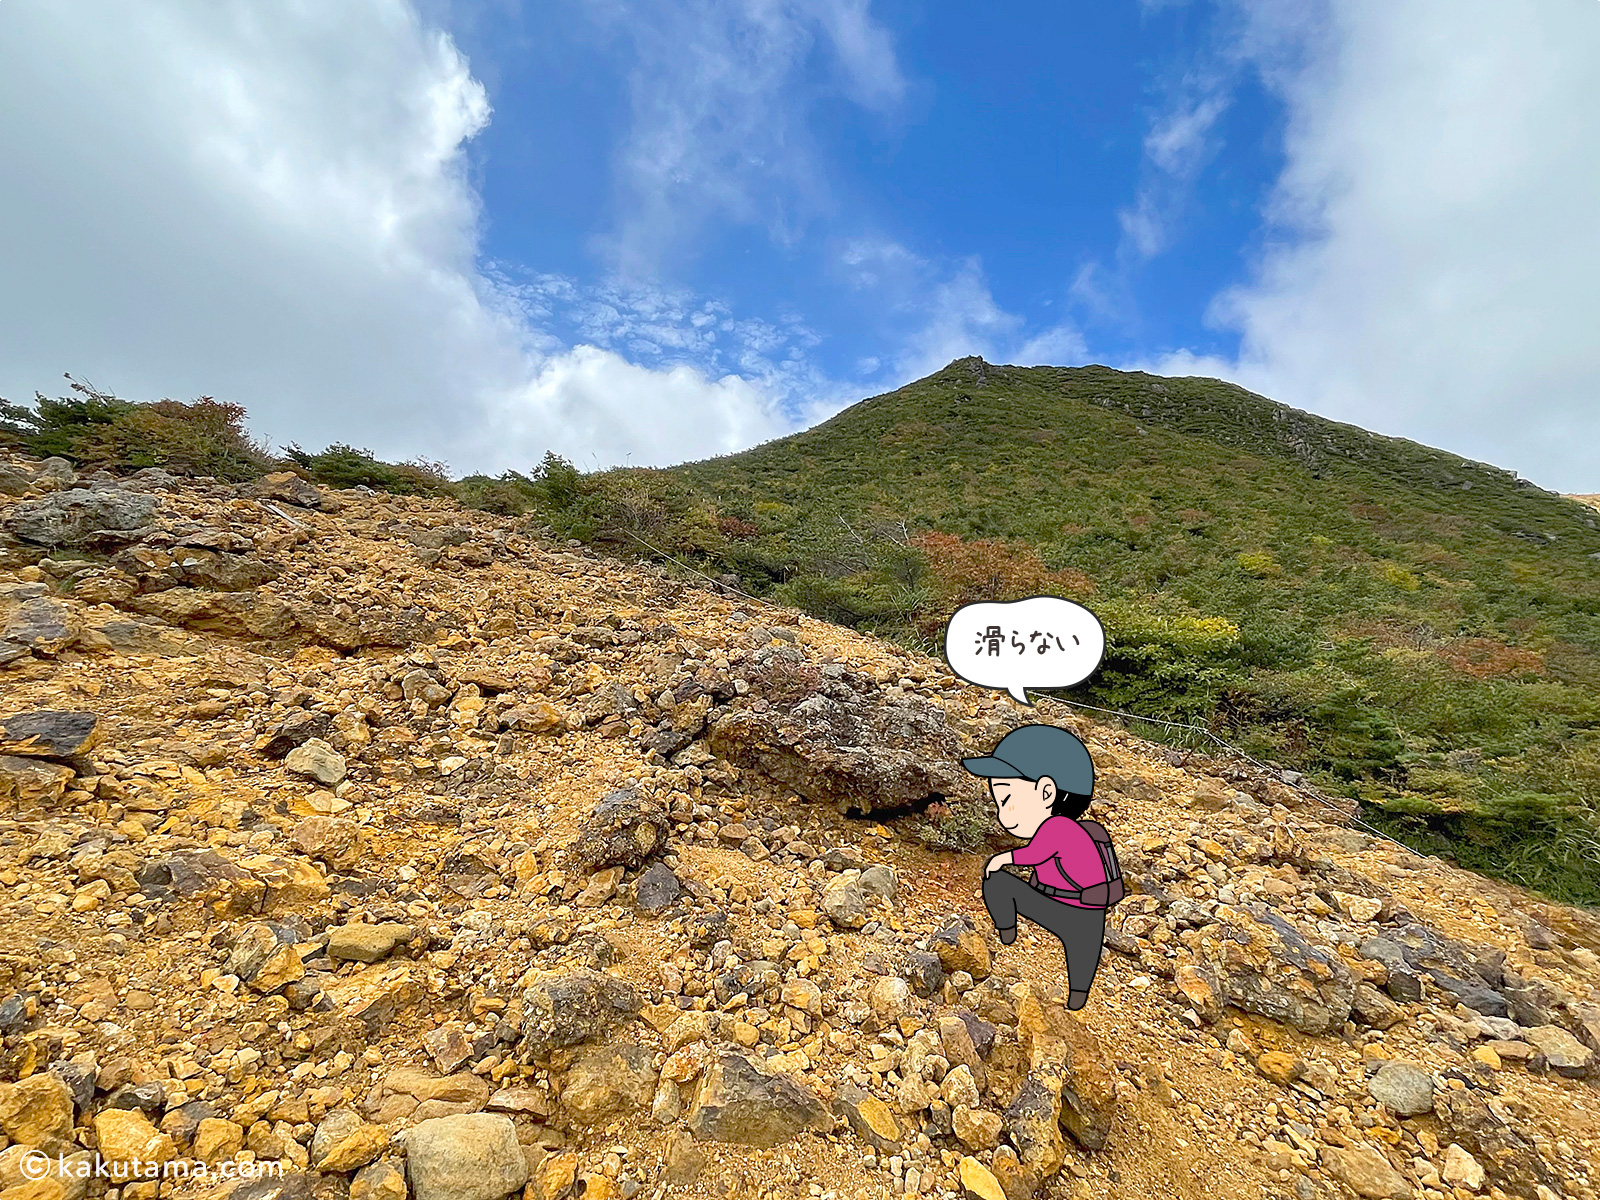 安達太良山への登り斜面の写真と登山者のイラスト